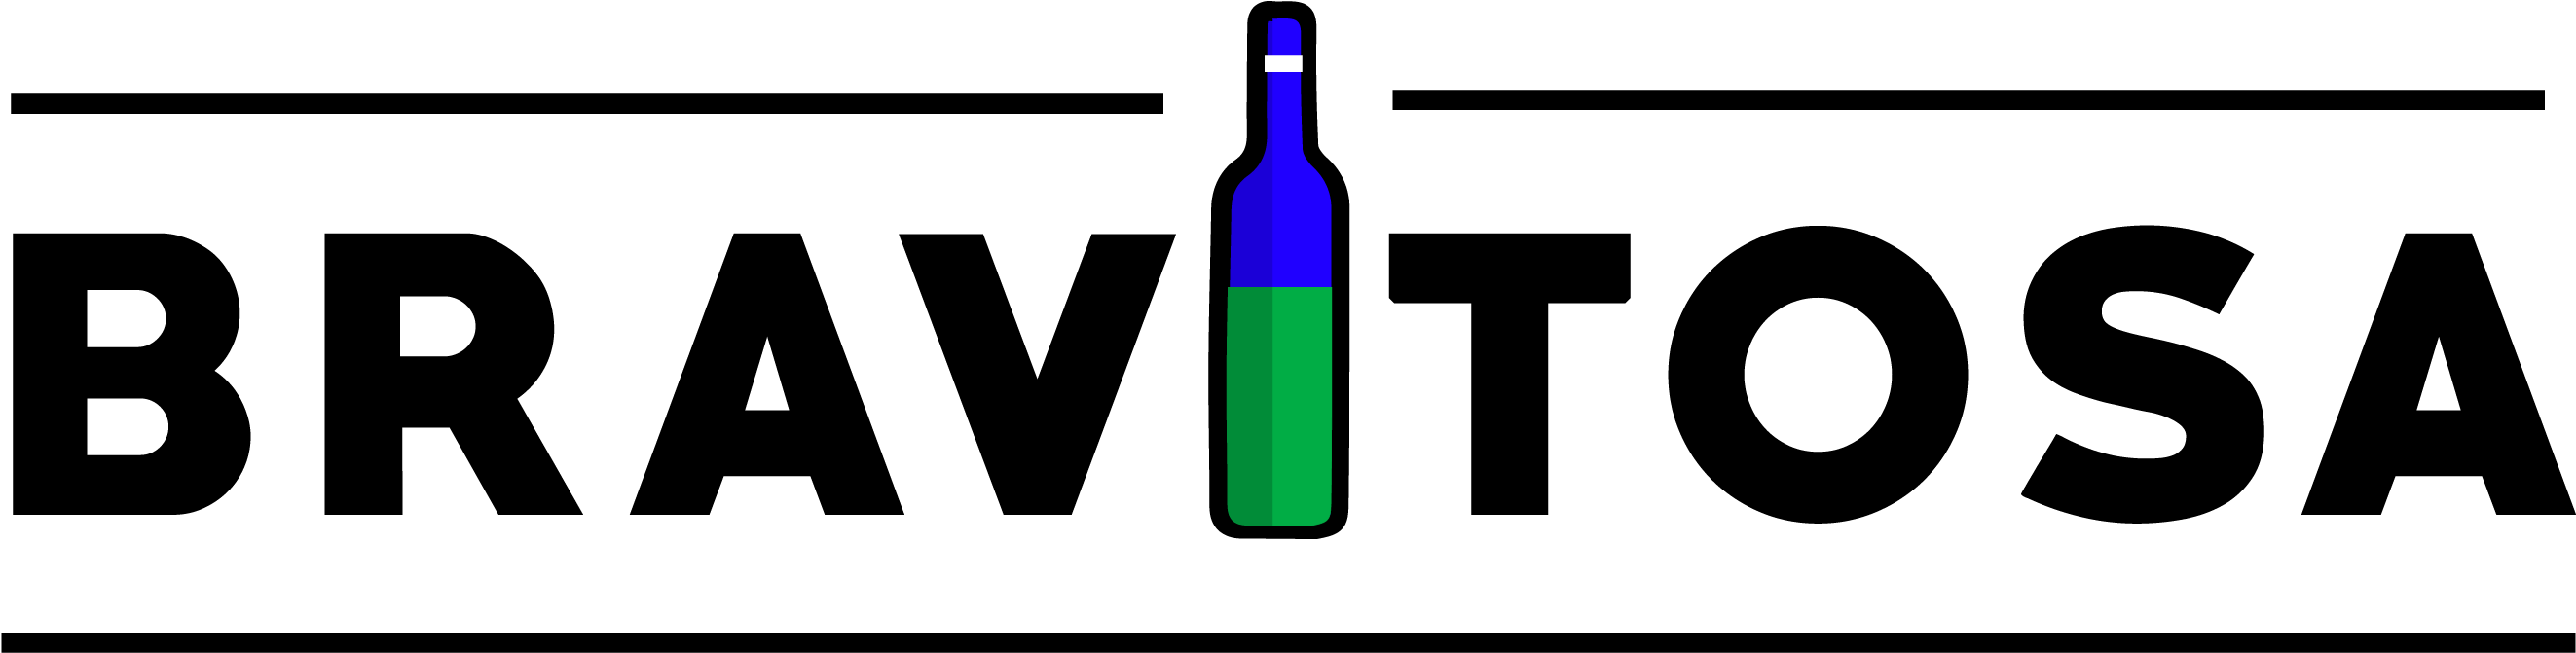 Distribuidora De Licores - Glass Bottle (2884x804)